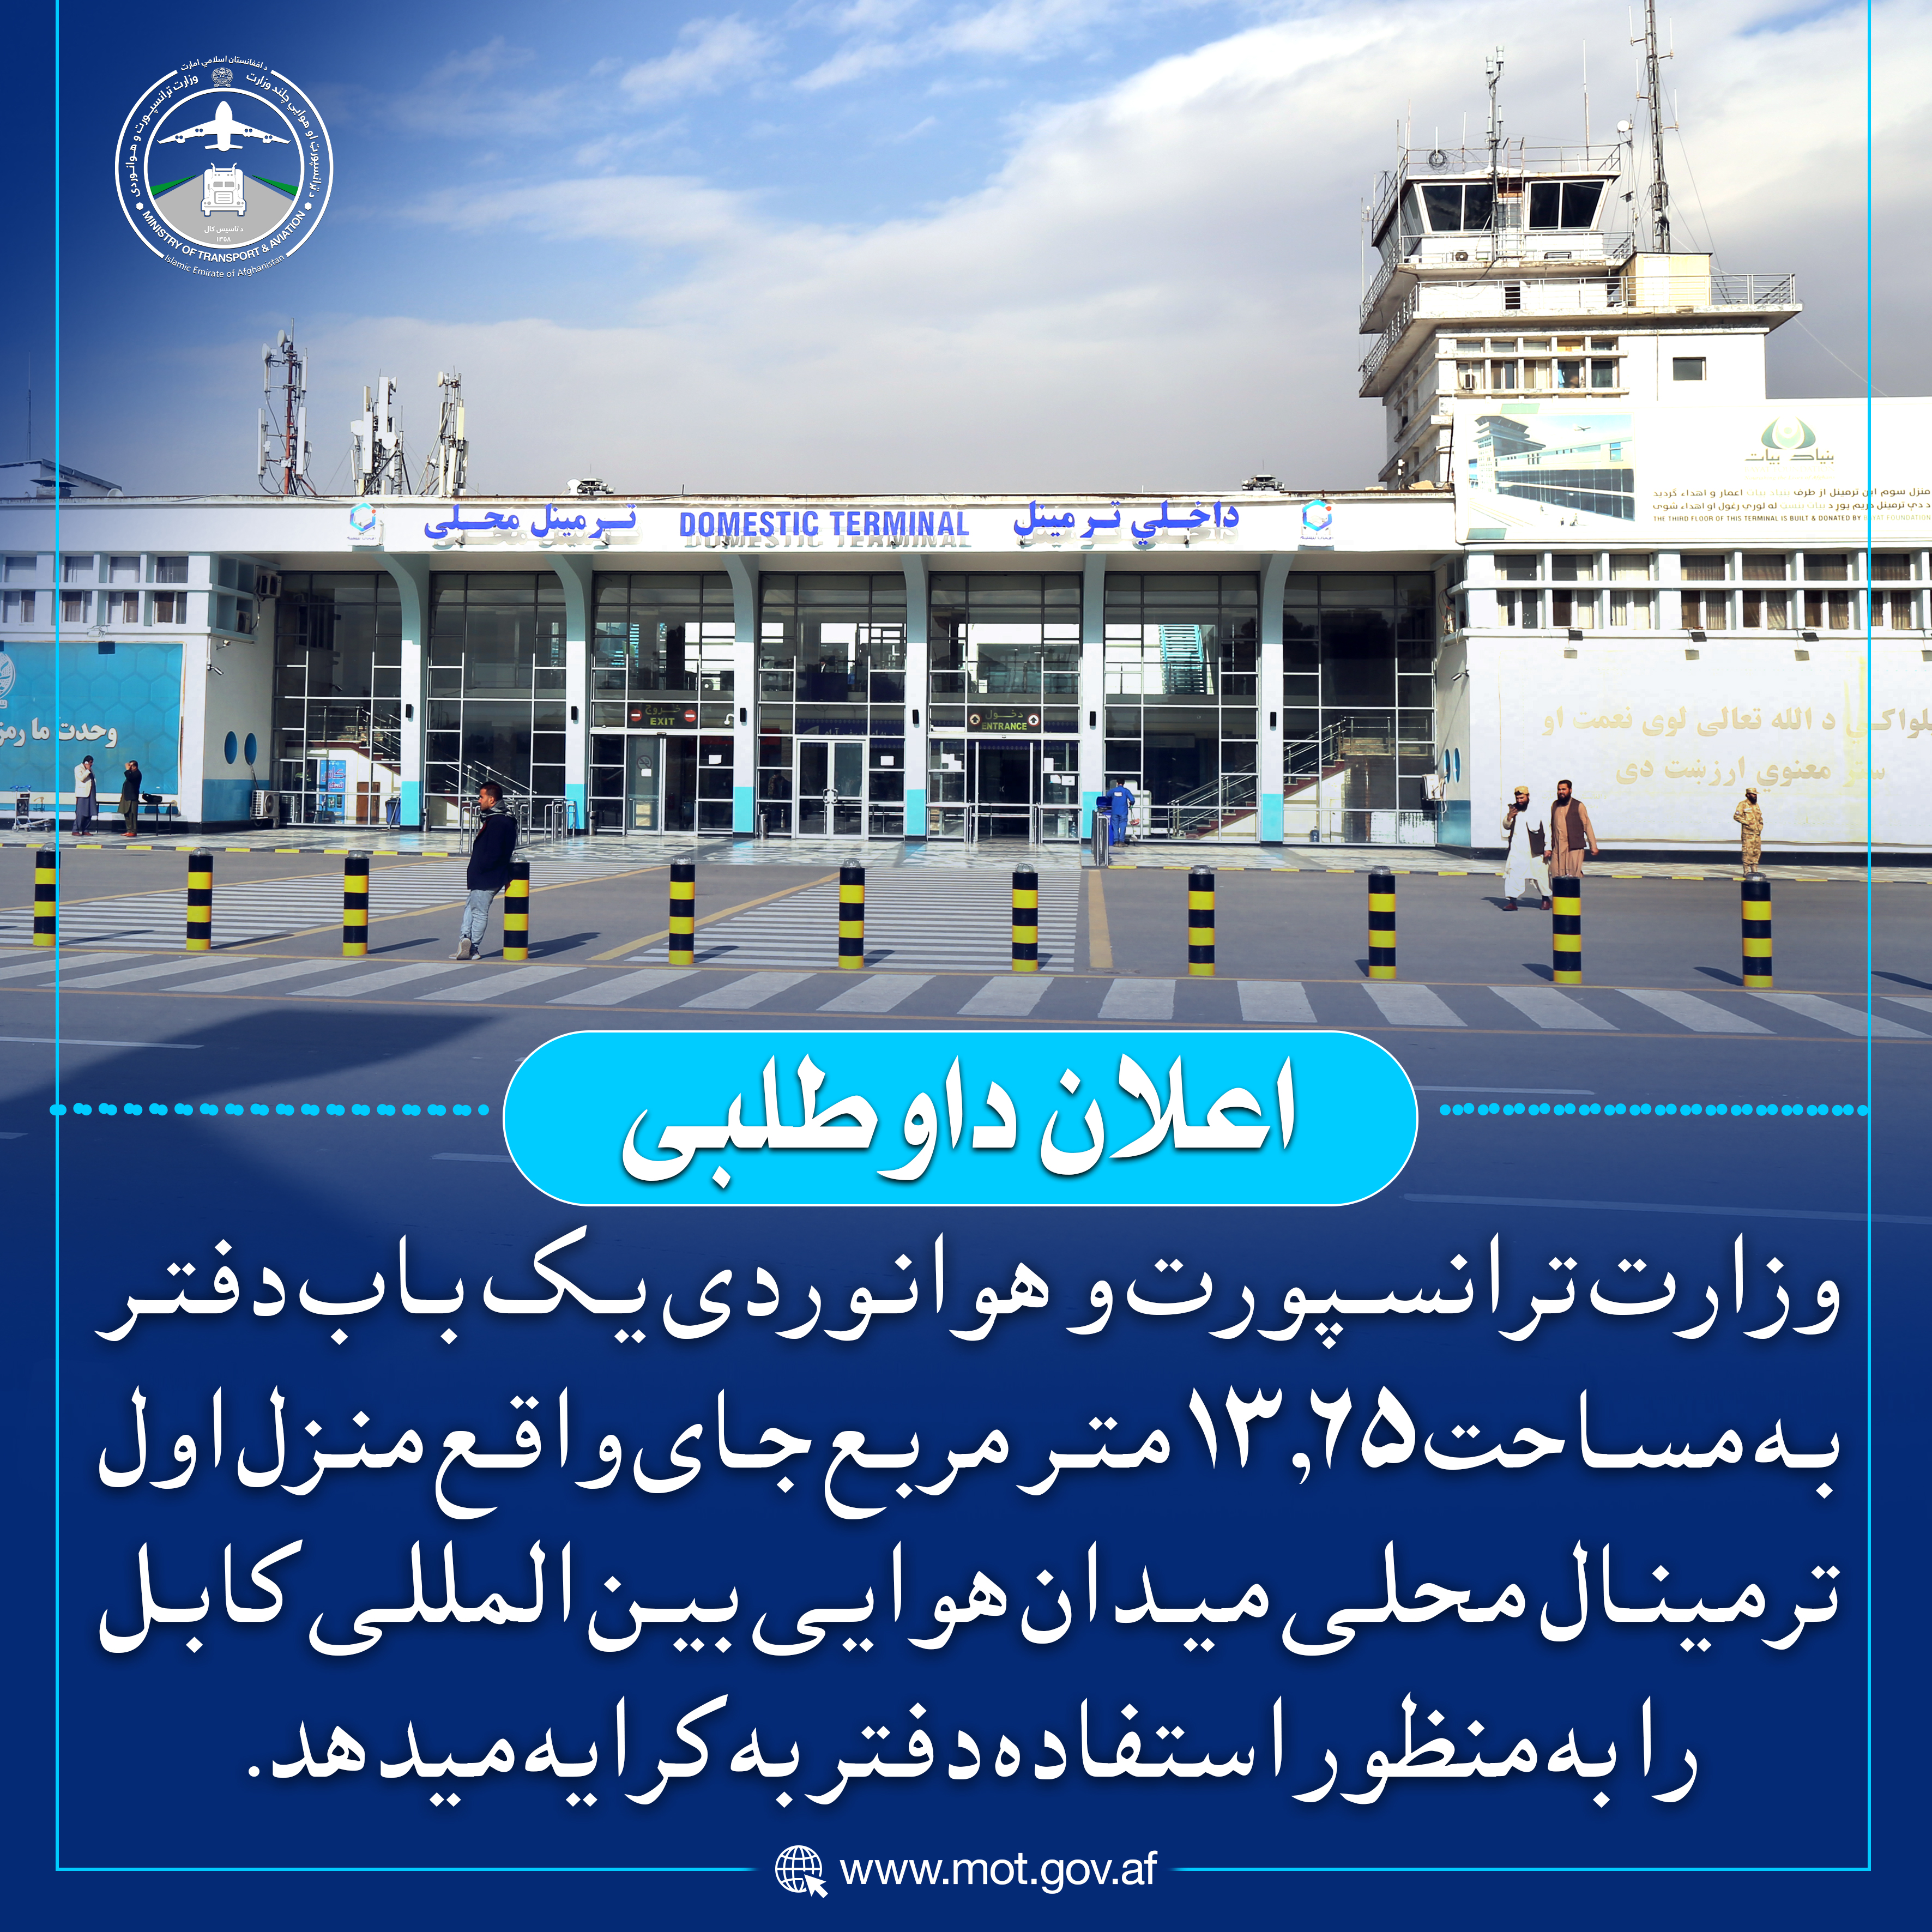 وزارت ترانسپورت و هوانوردی یک باب دفتر به مساحت ۱۳.۶۵ متر مربع جای واقع منزل اول ترمینال محلی میدان هوایی بین المللی کابل را به منظور استفاده دفتر به کرایه میدهد.